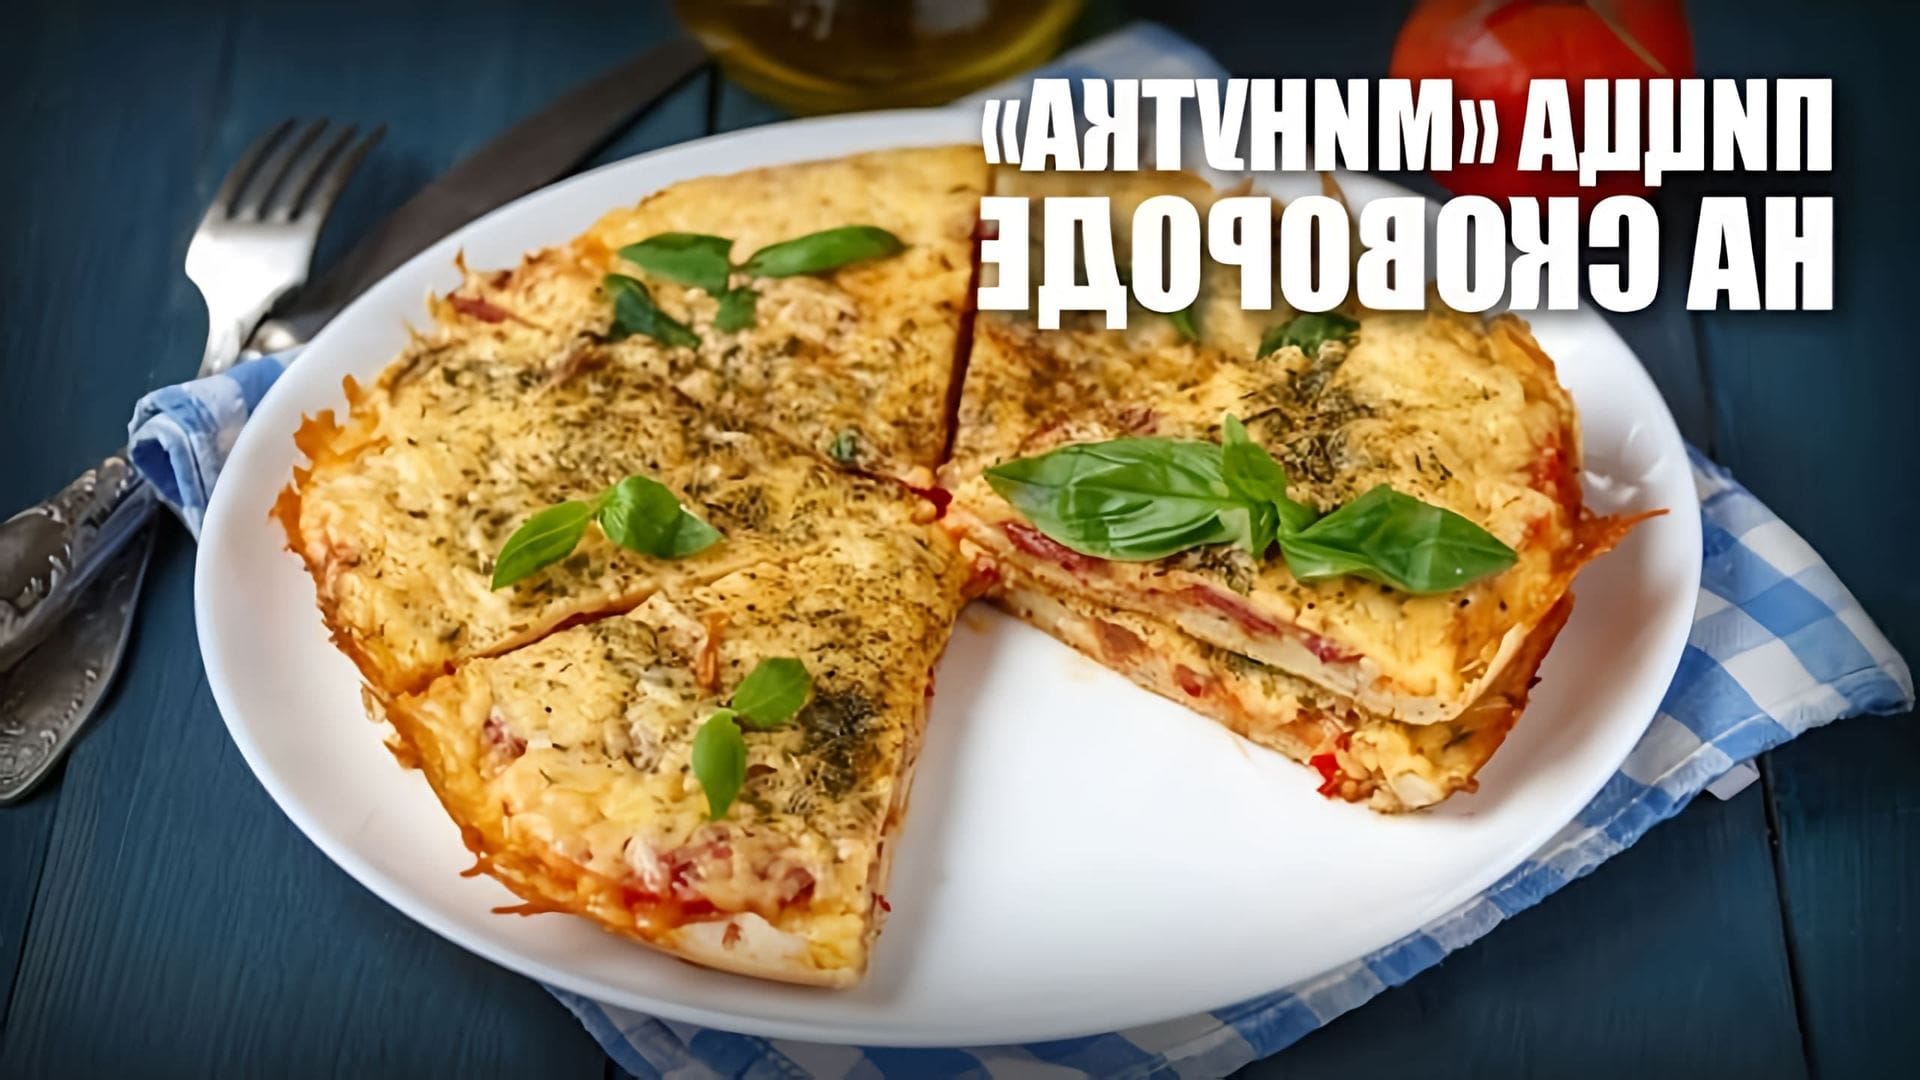 В этом видео демонстрируется рецепт приготовления пиццы "Минутка" на сковороде